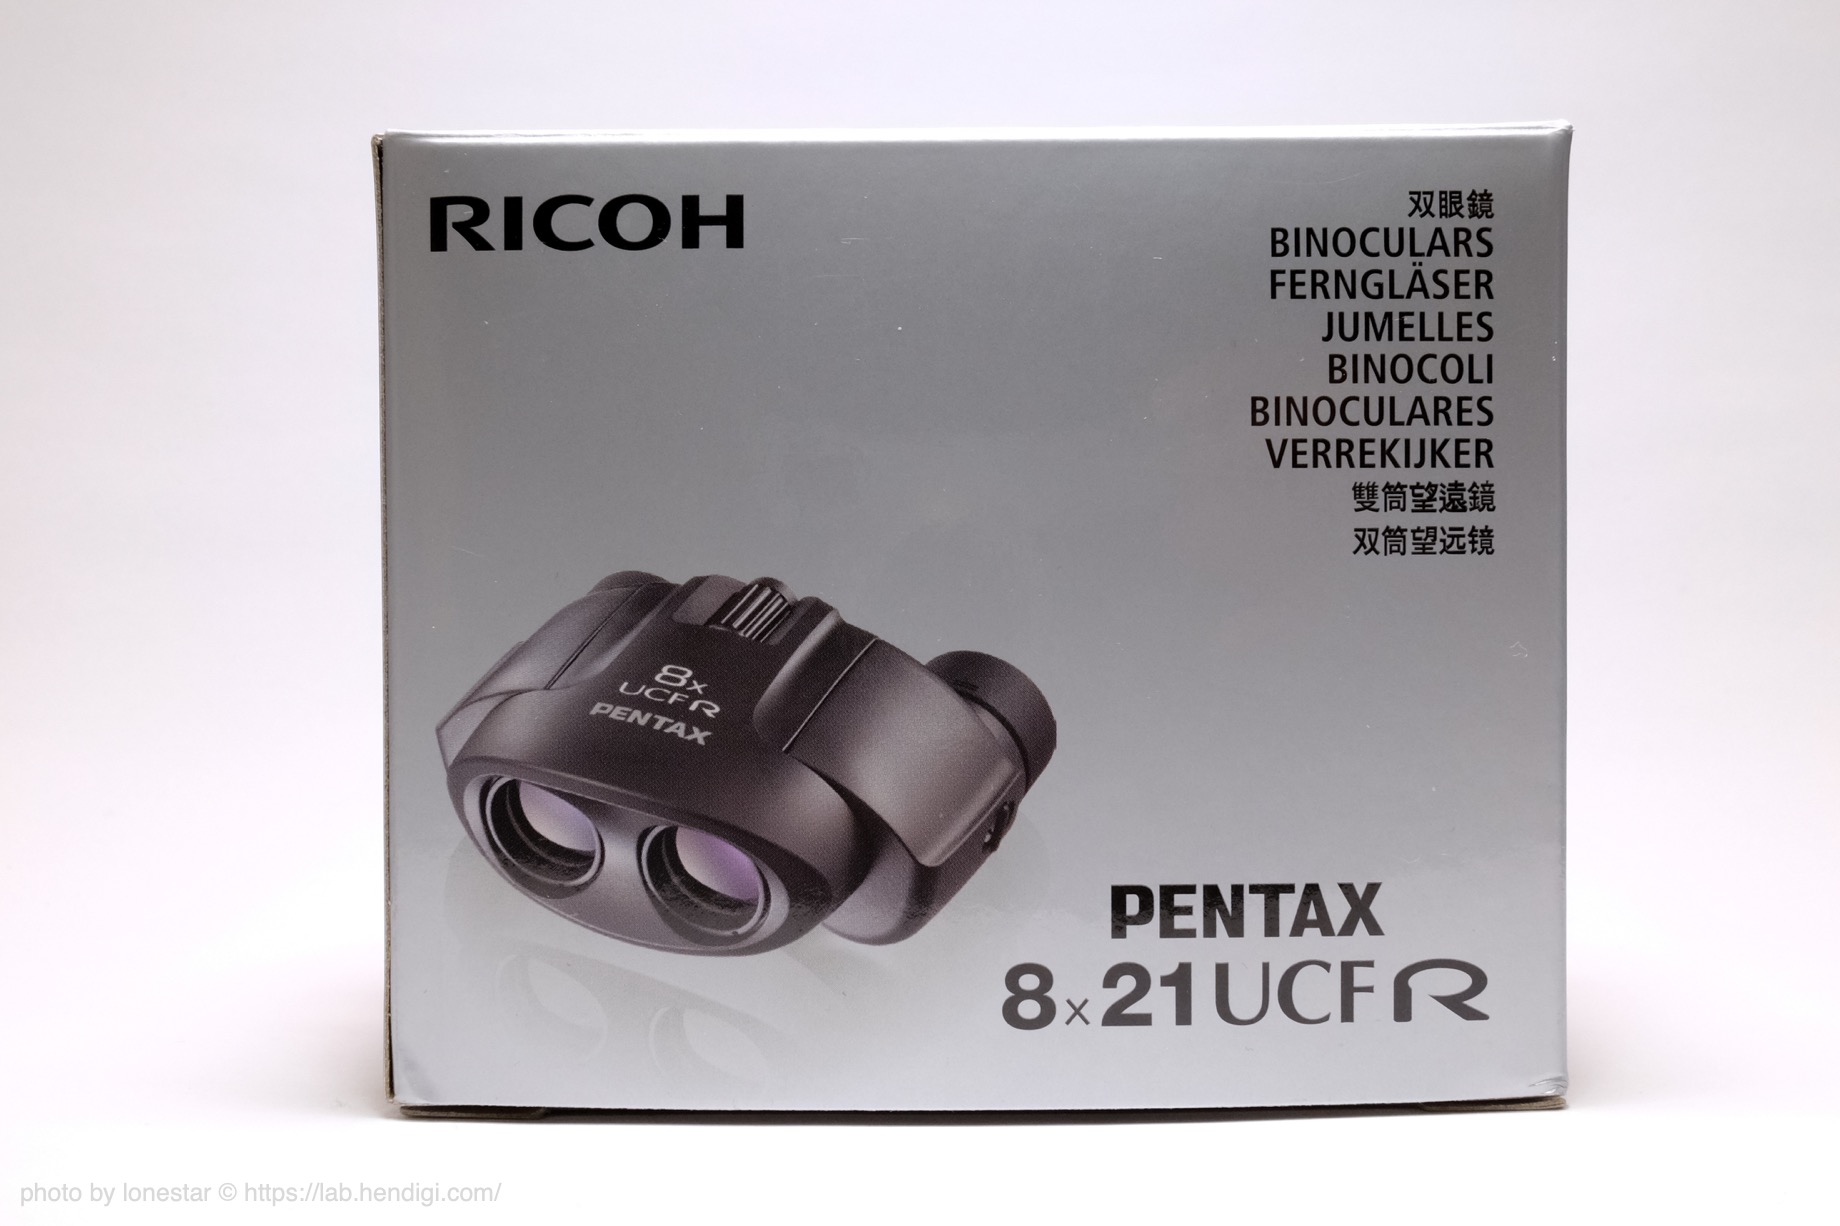 PENTAX 8×21 UCF R】バードウォッチングに最適な双眼鏡を買ってみた。これで野鳥撮影を楽しむぞ！